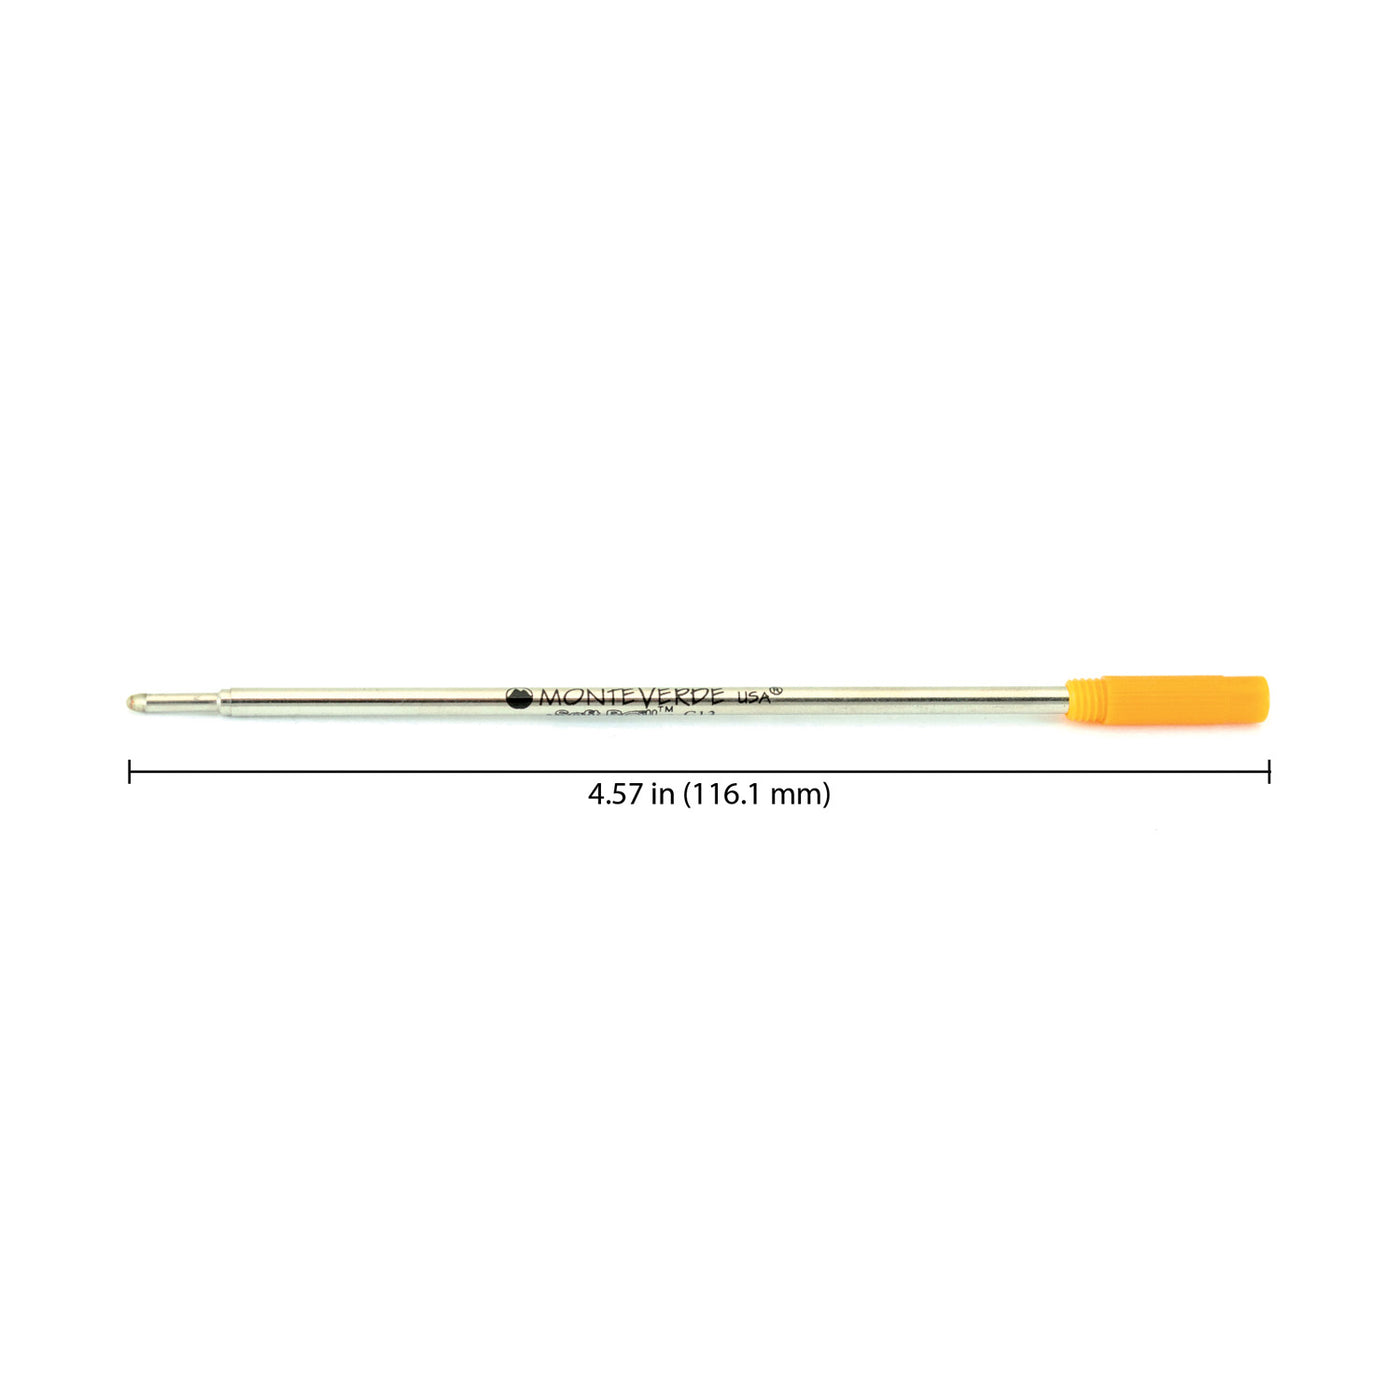 Monteverde Ball Pen Refill for Cross - Medium - Orange - Pack of 2 2